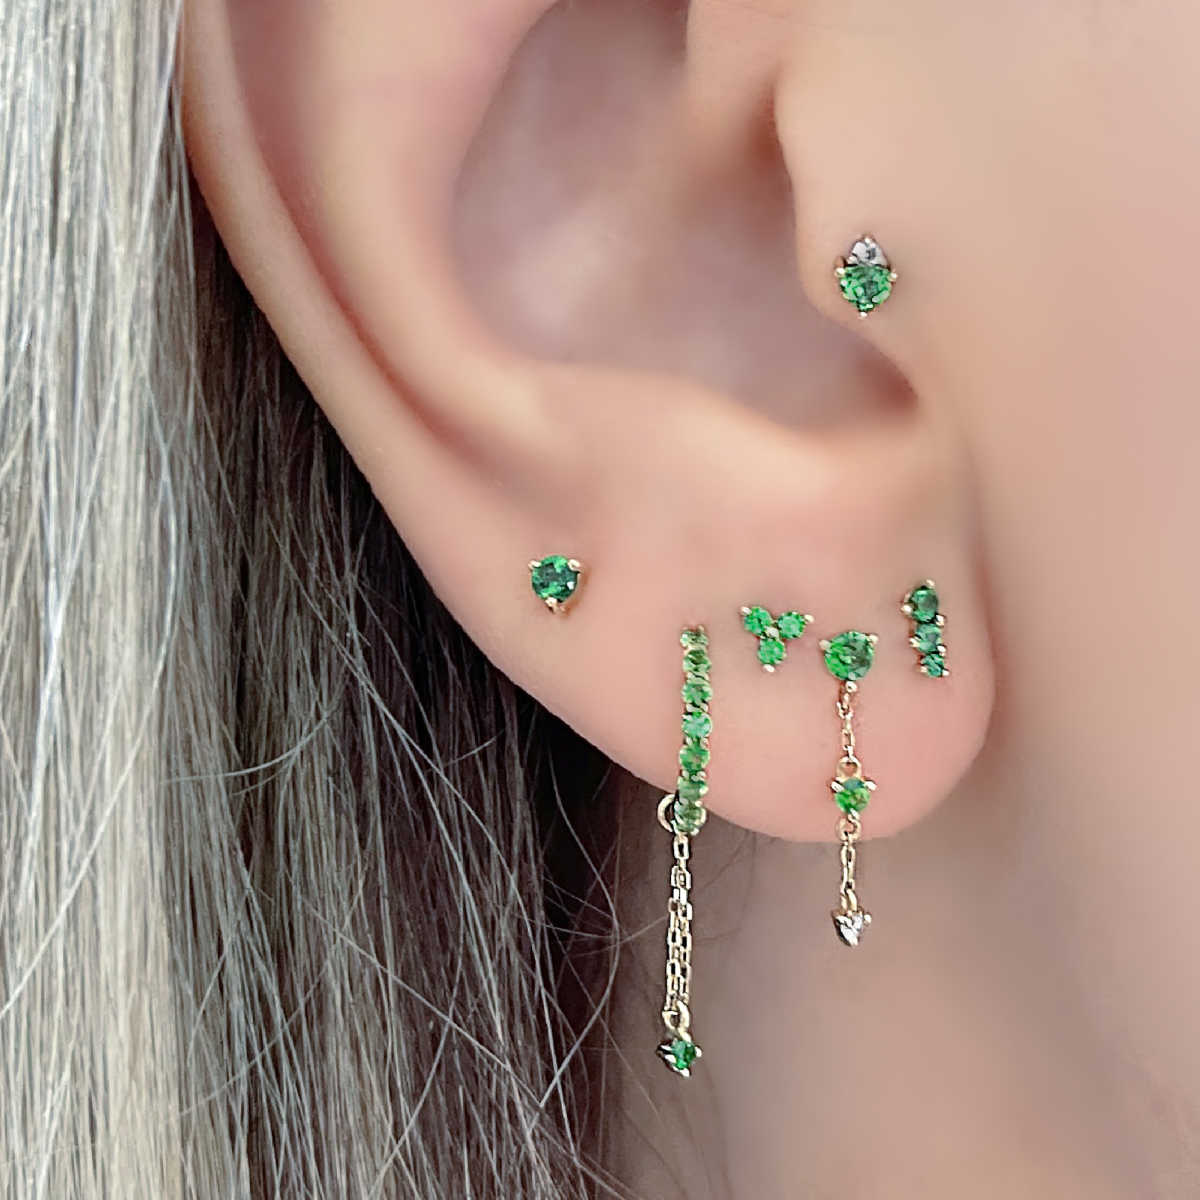 Green Garnet Gemstone Earrings on Model | Gold Helix, Cartilage & Huggie Earrings from Two of Most